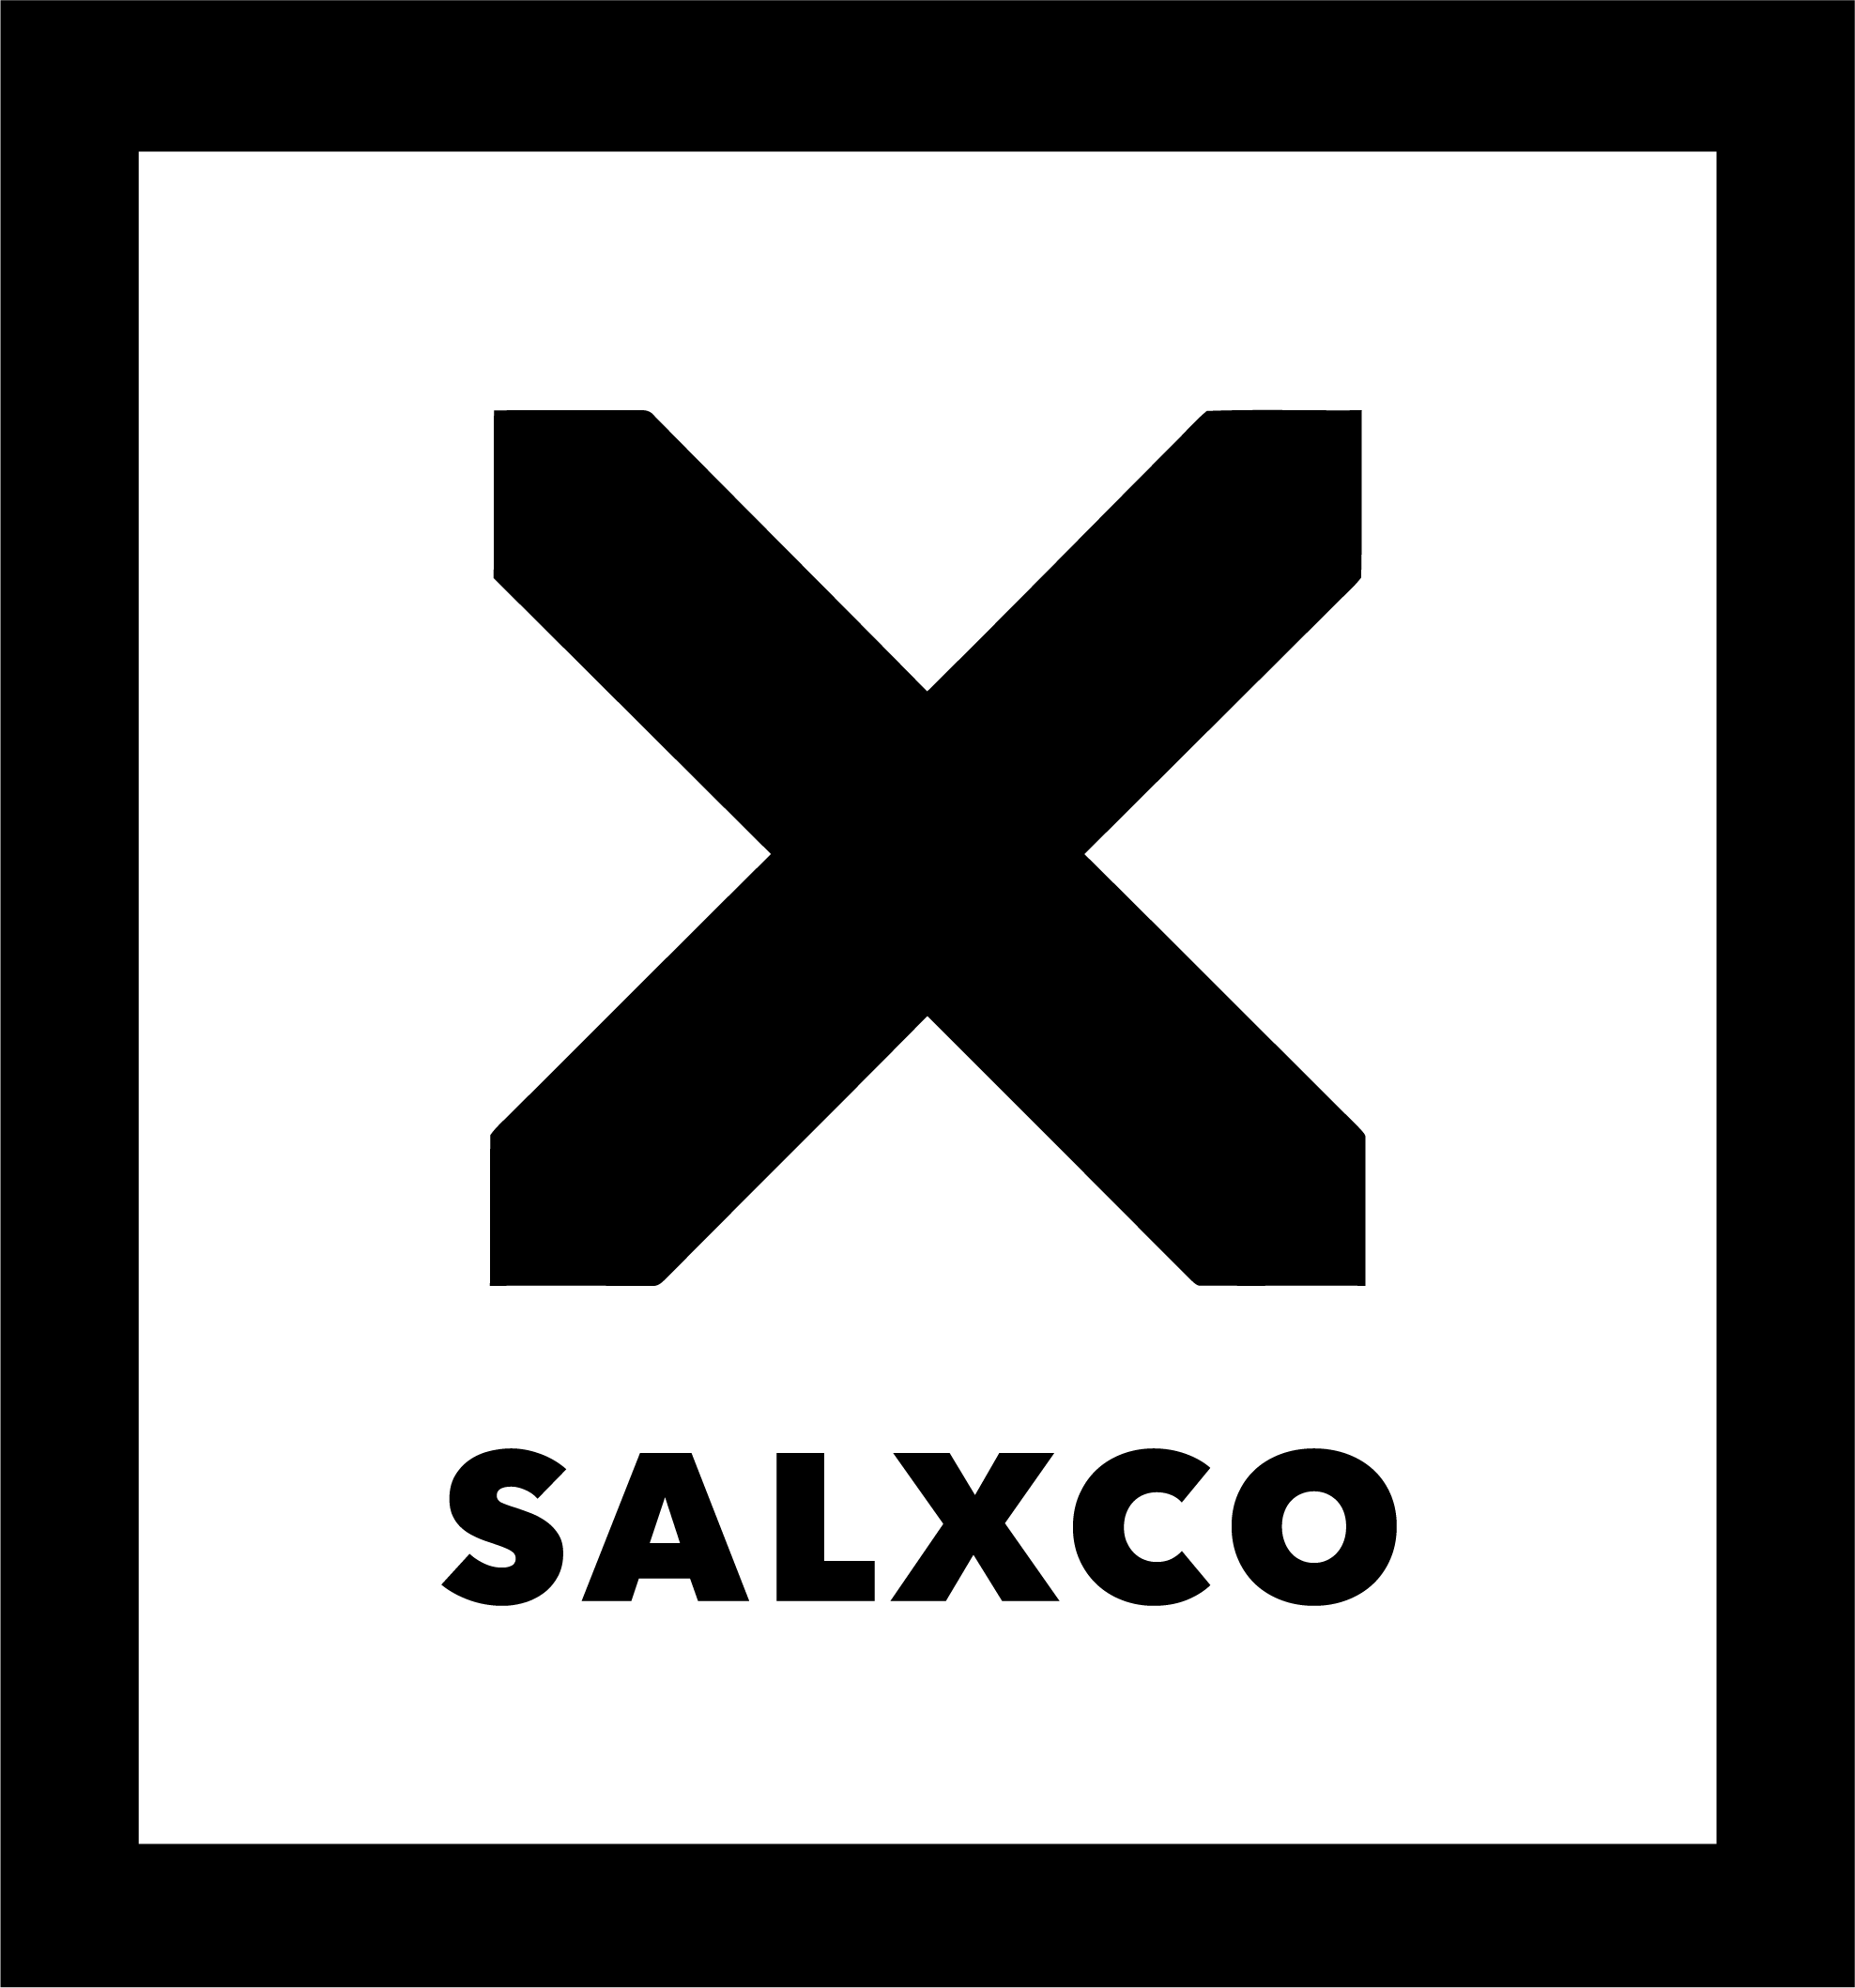 SALXCO